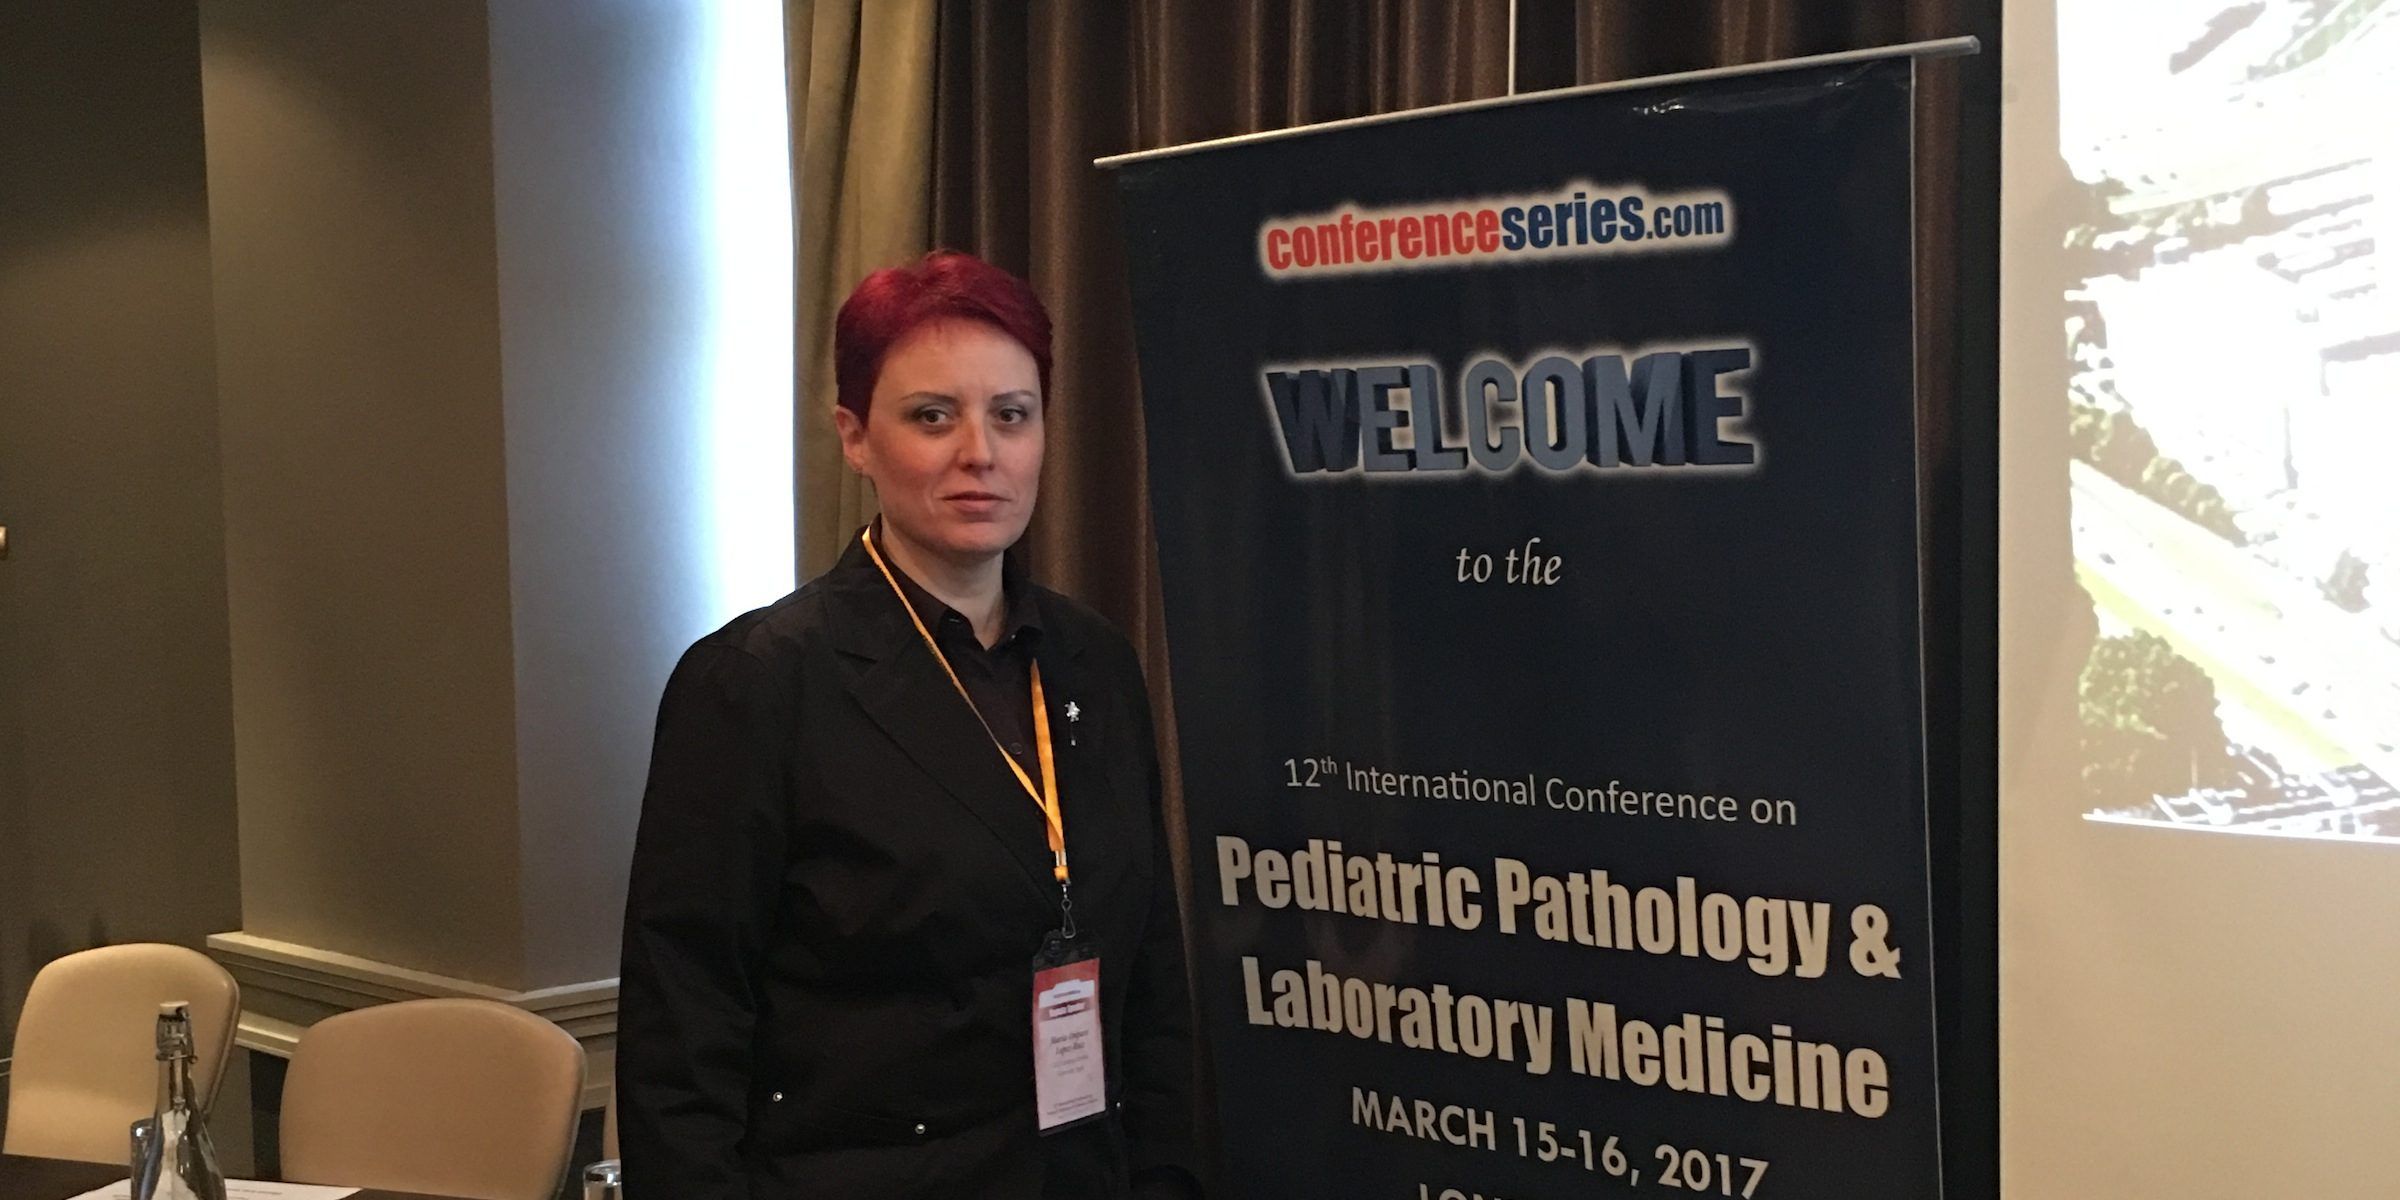 La doctora Mariam López Ruiz, coordinadora de Medicine en el CEU-UCH, durante su participación en la International Conference on Pediatric Pathology, celebrada en Londres este mes de marzo.